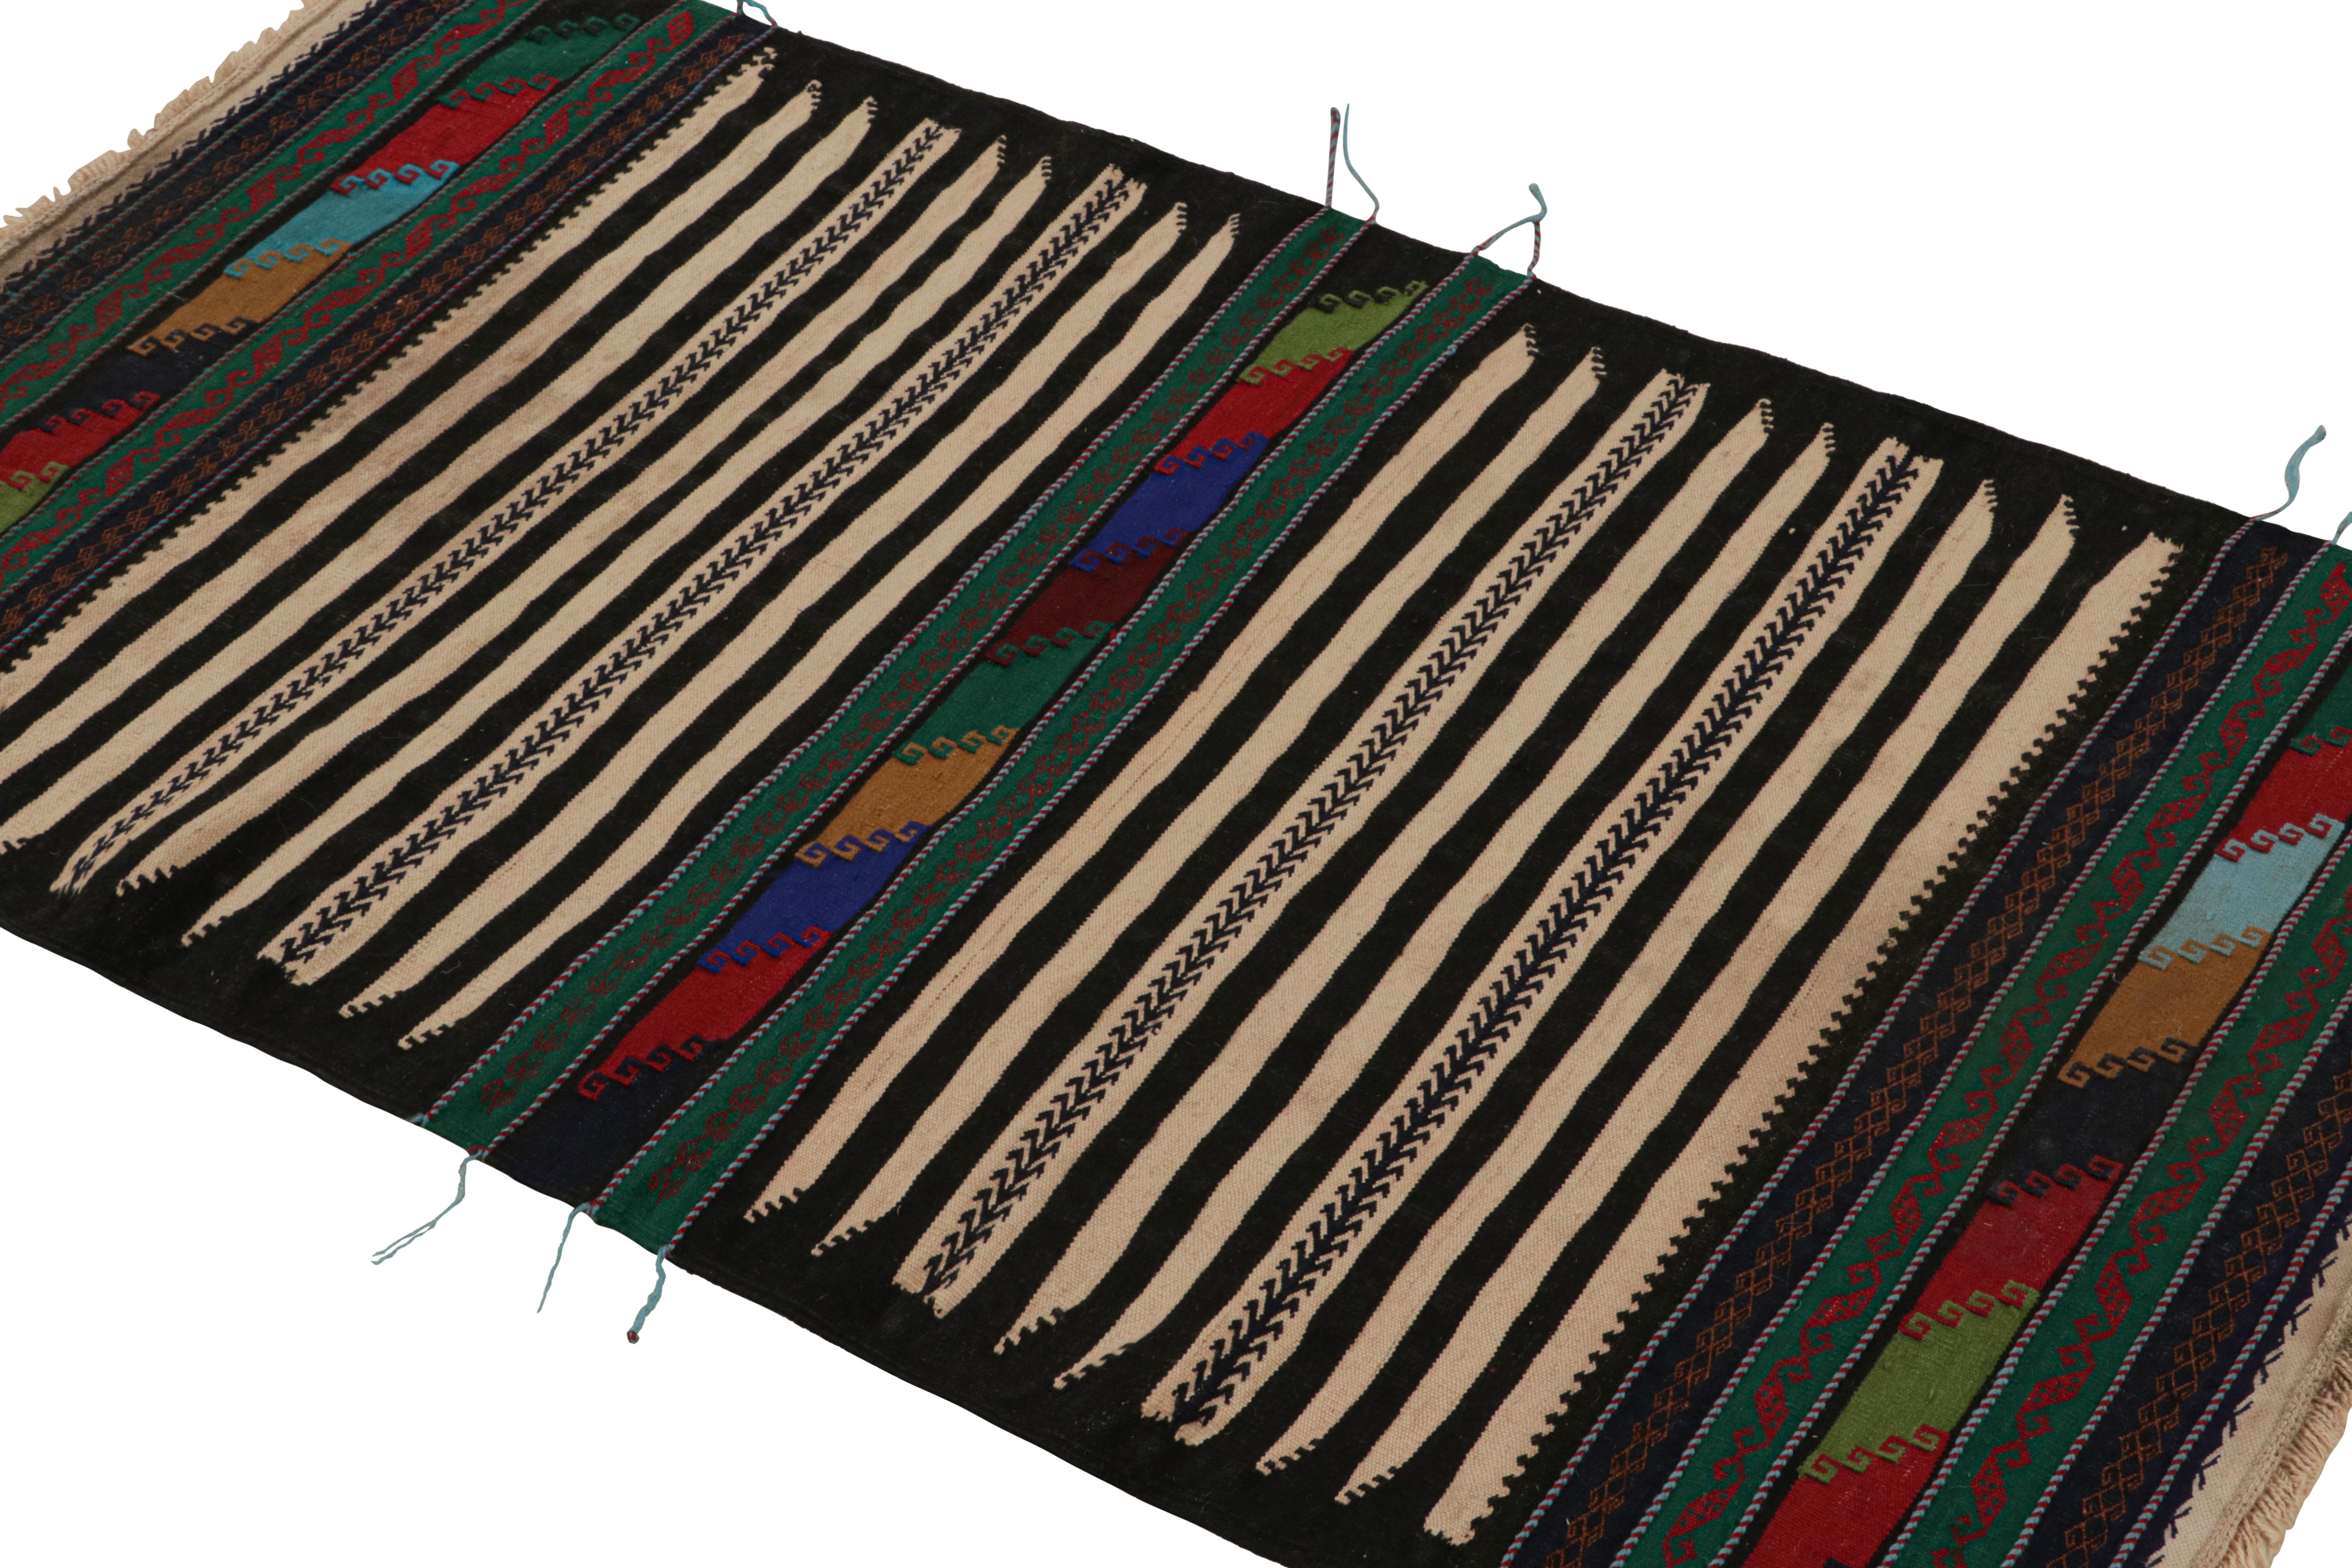 Tissé à la main en laine, ce tapis kilim afghan vintage 3x4 date des années 1950-1960. Il s'agit d'une collection tribale parmi les nouveaux ajouts à la collection Rug & Kilim.

Sur le Design :

Un coloris polychrome aux teintes riches et vibrantes